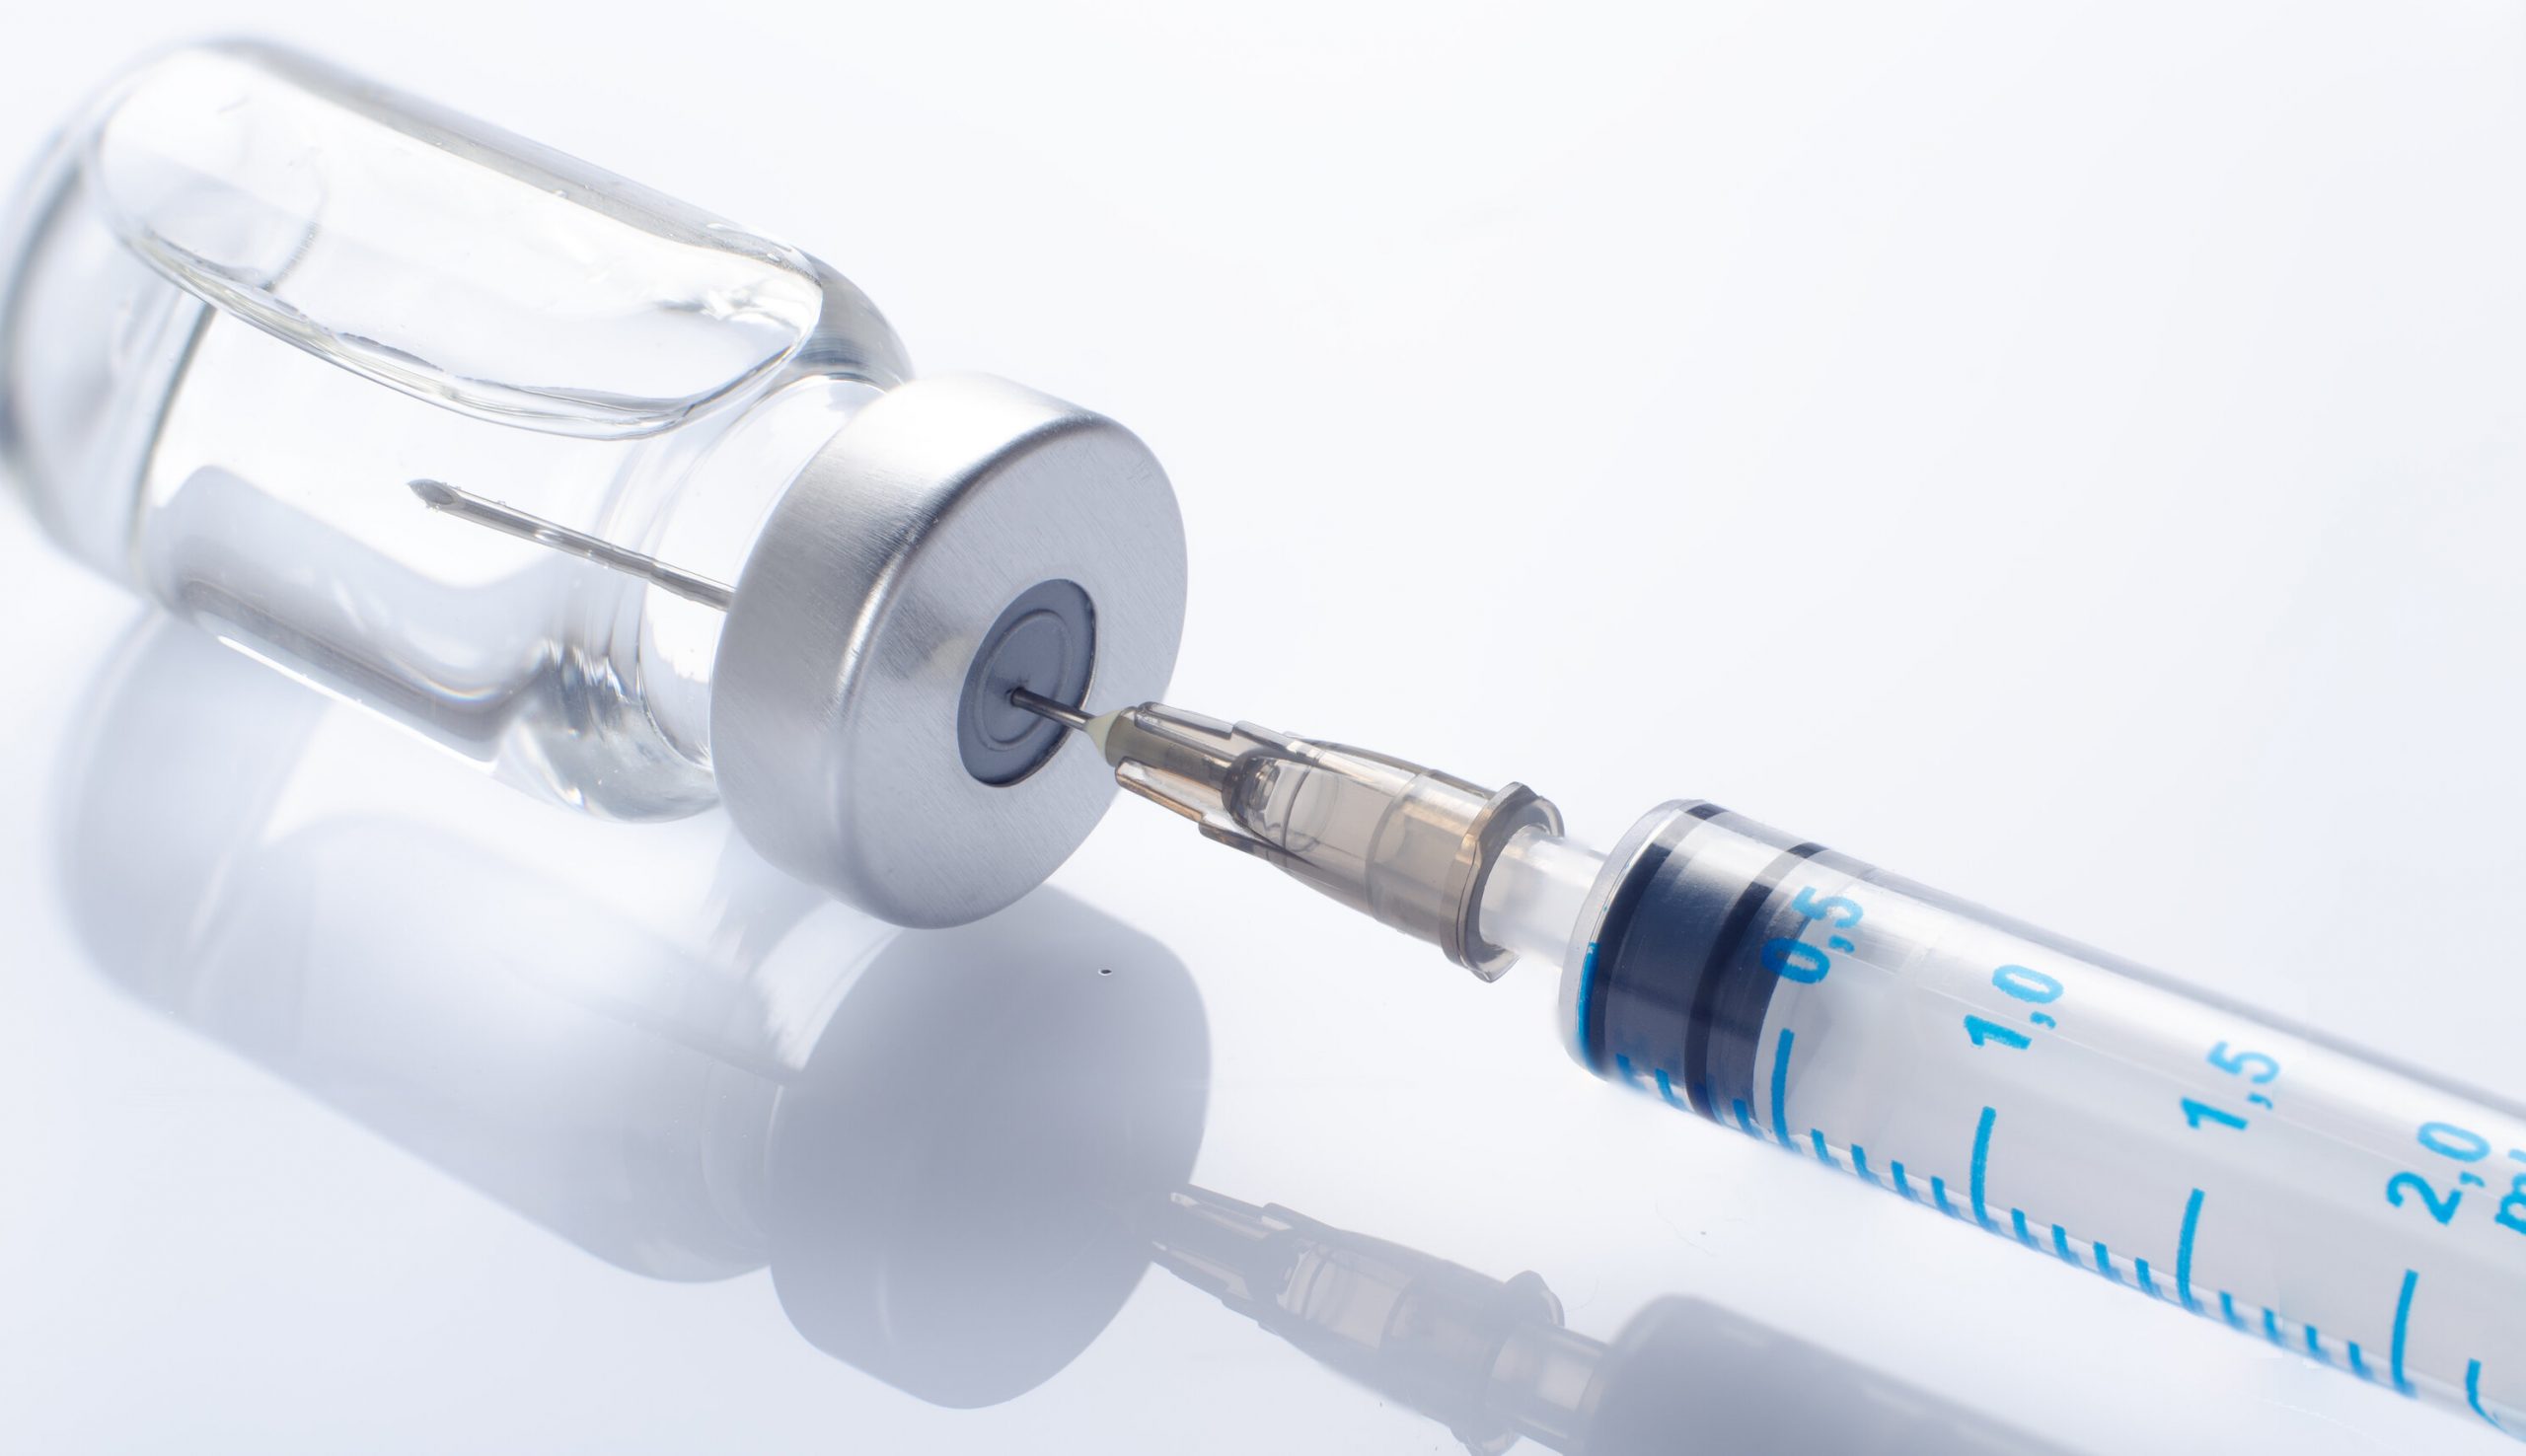 Institutul Pasteur oprește dezvoltarea vaccinului anti-Covid, bazat pe metoda clasică. Rămânem doar cu cele de tip ARN și ADN